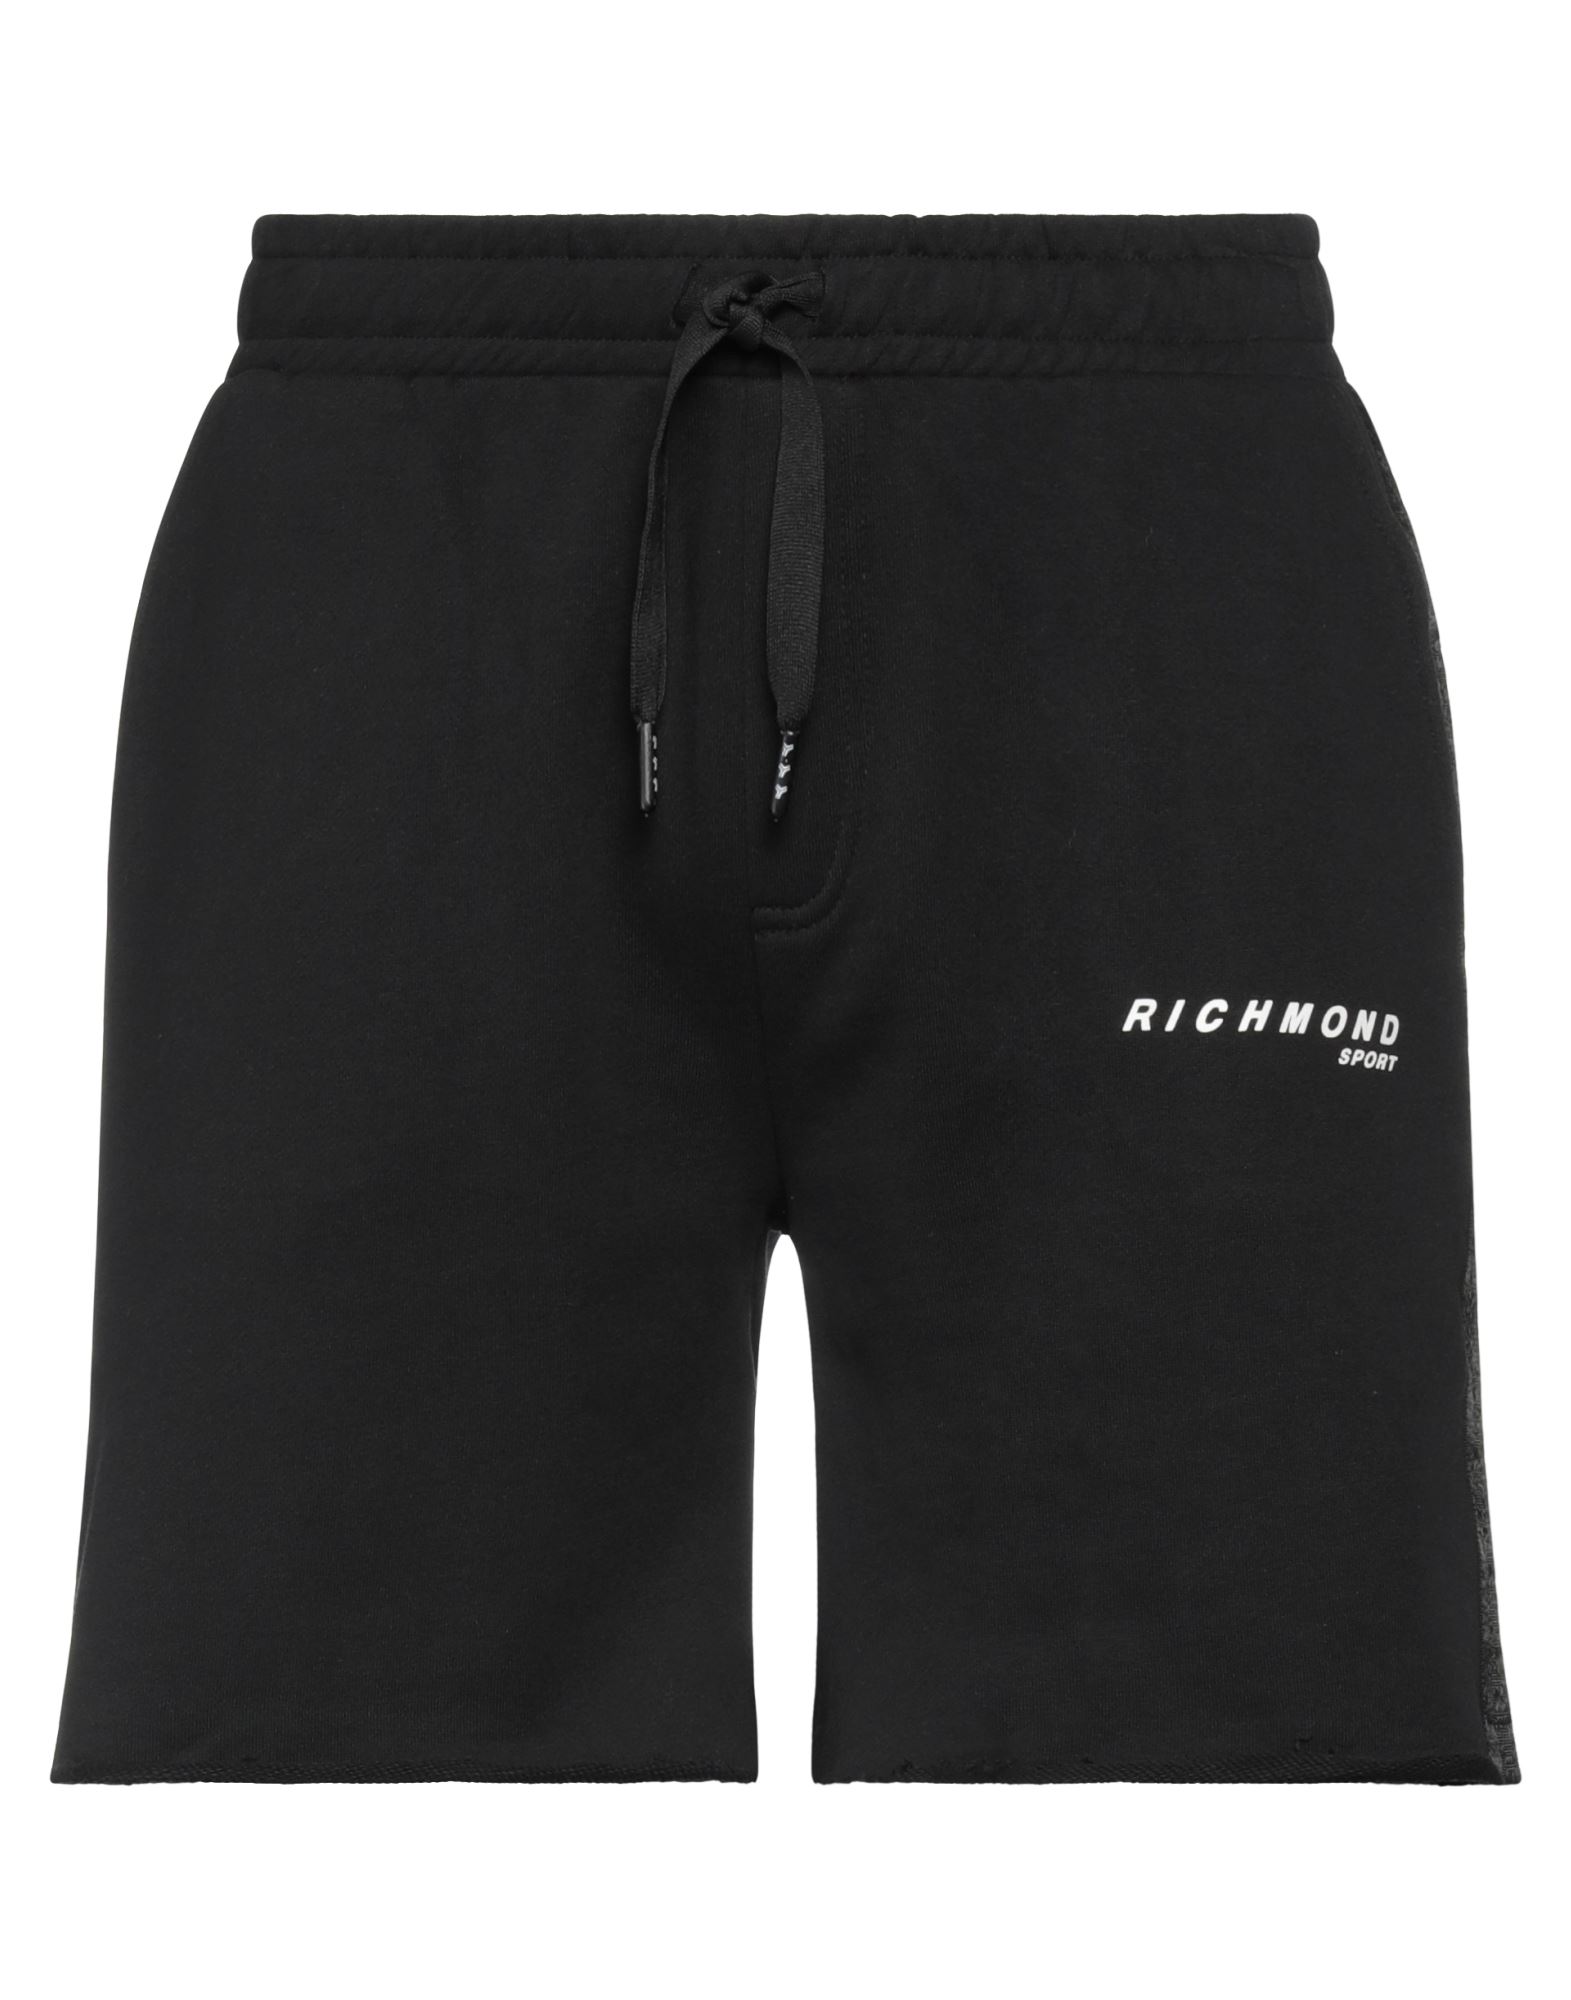 Richmond Man Shorts & Bermuda Shorts Black Size L Cotton